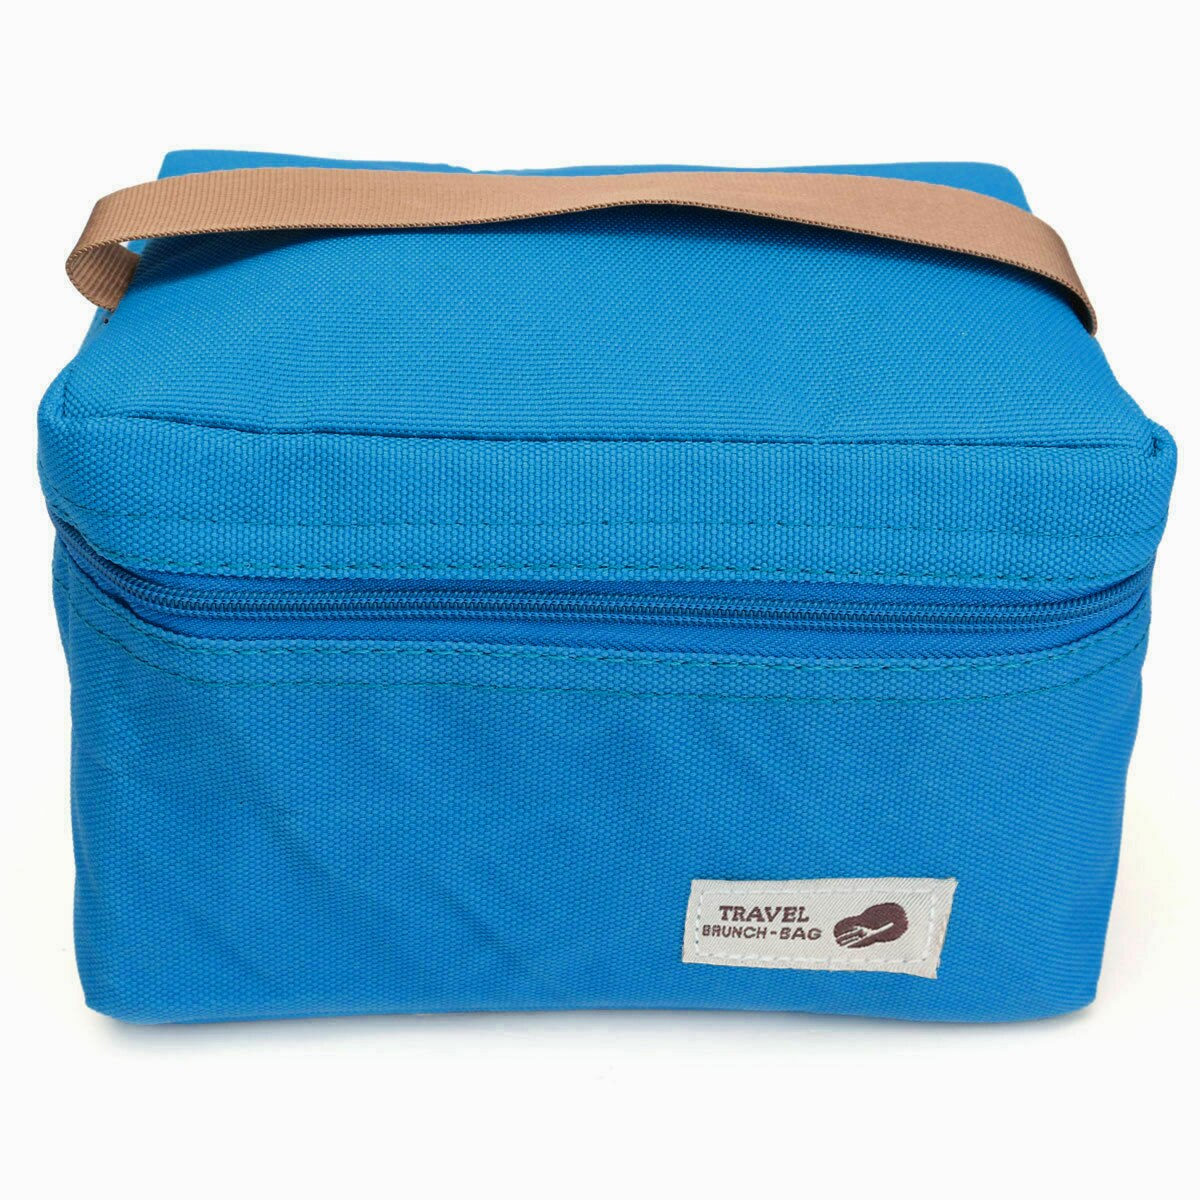 Bærbar termisk isoleret køligere madpakke opbevaringspose picnic rejse bære tote stor kapacitet antitryk hold varmen: Blå